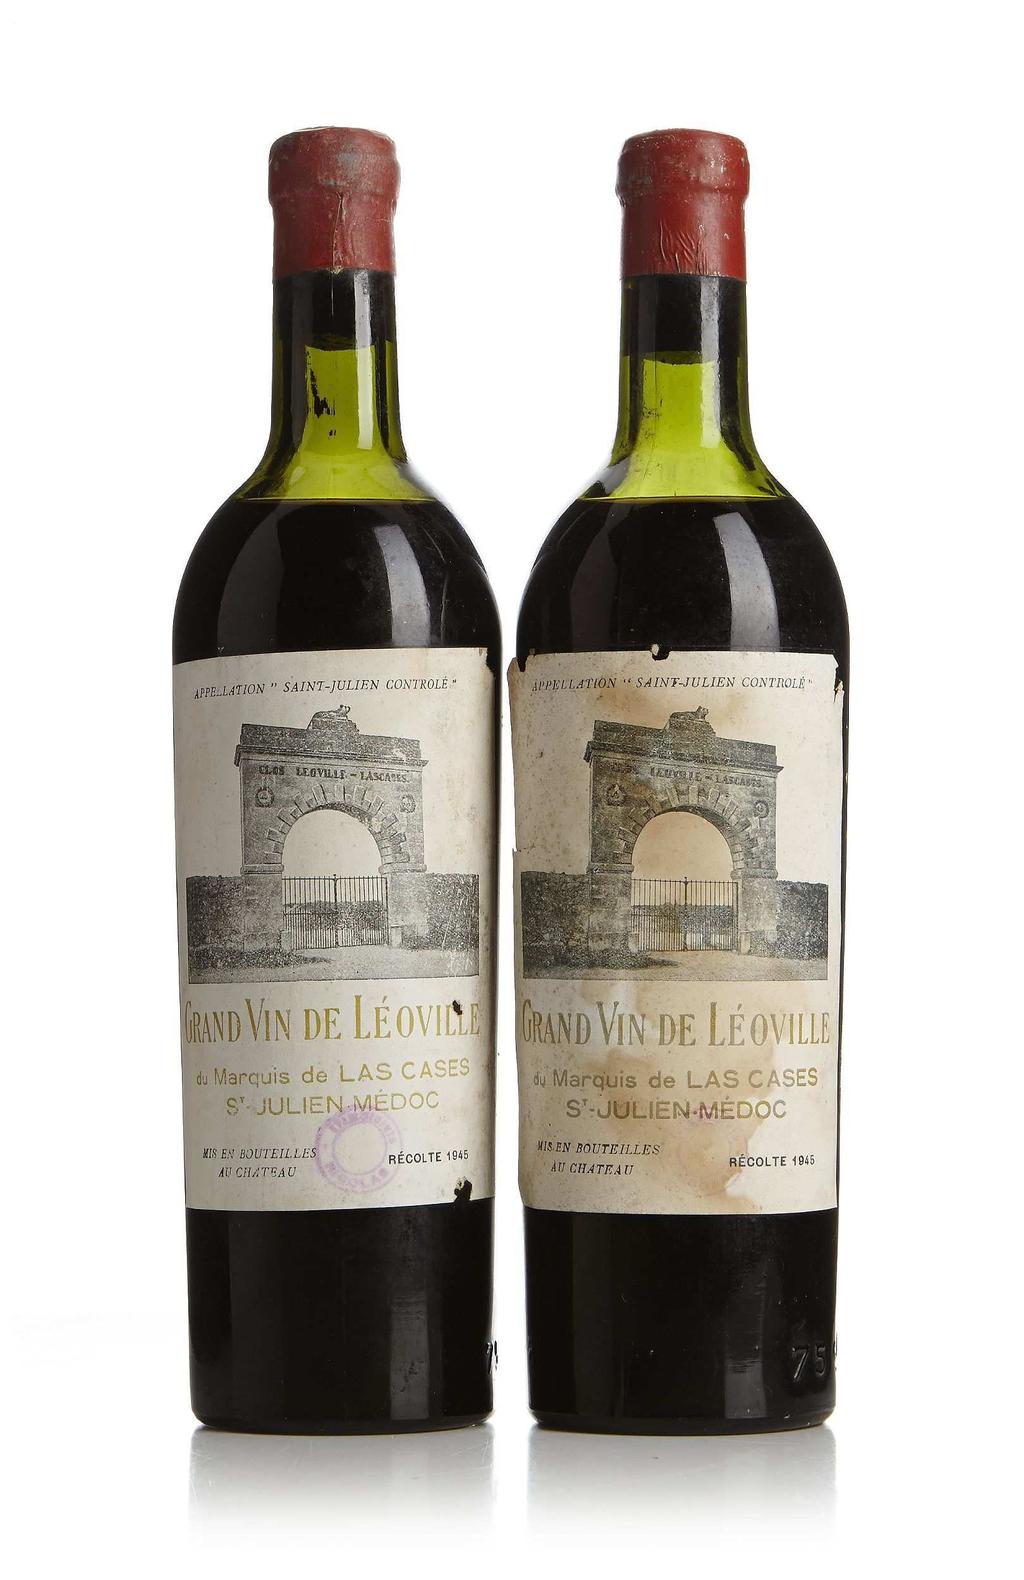 Frankrike Röd Bordeaux Chateau Leoville Las Cases År 1855 klassificerades Bordeaux bästa vingårdar. Vid det tillfället tilldelades Leoville Las Cases en andra Cru Classe.